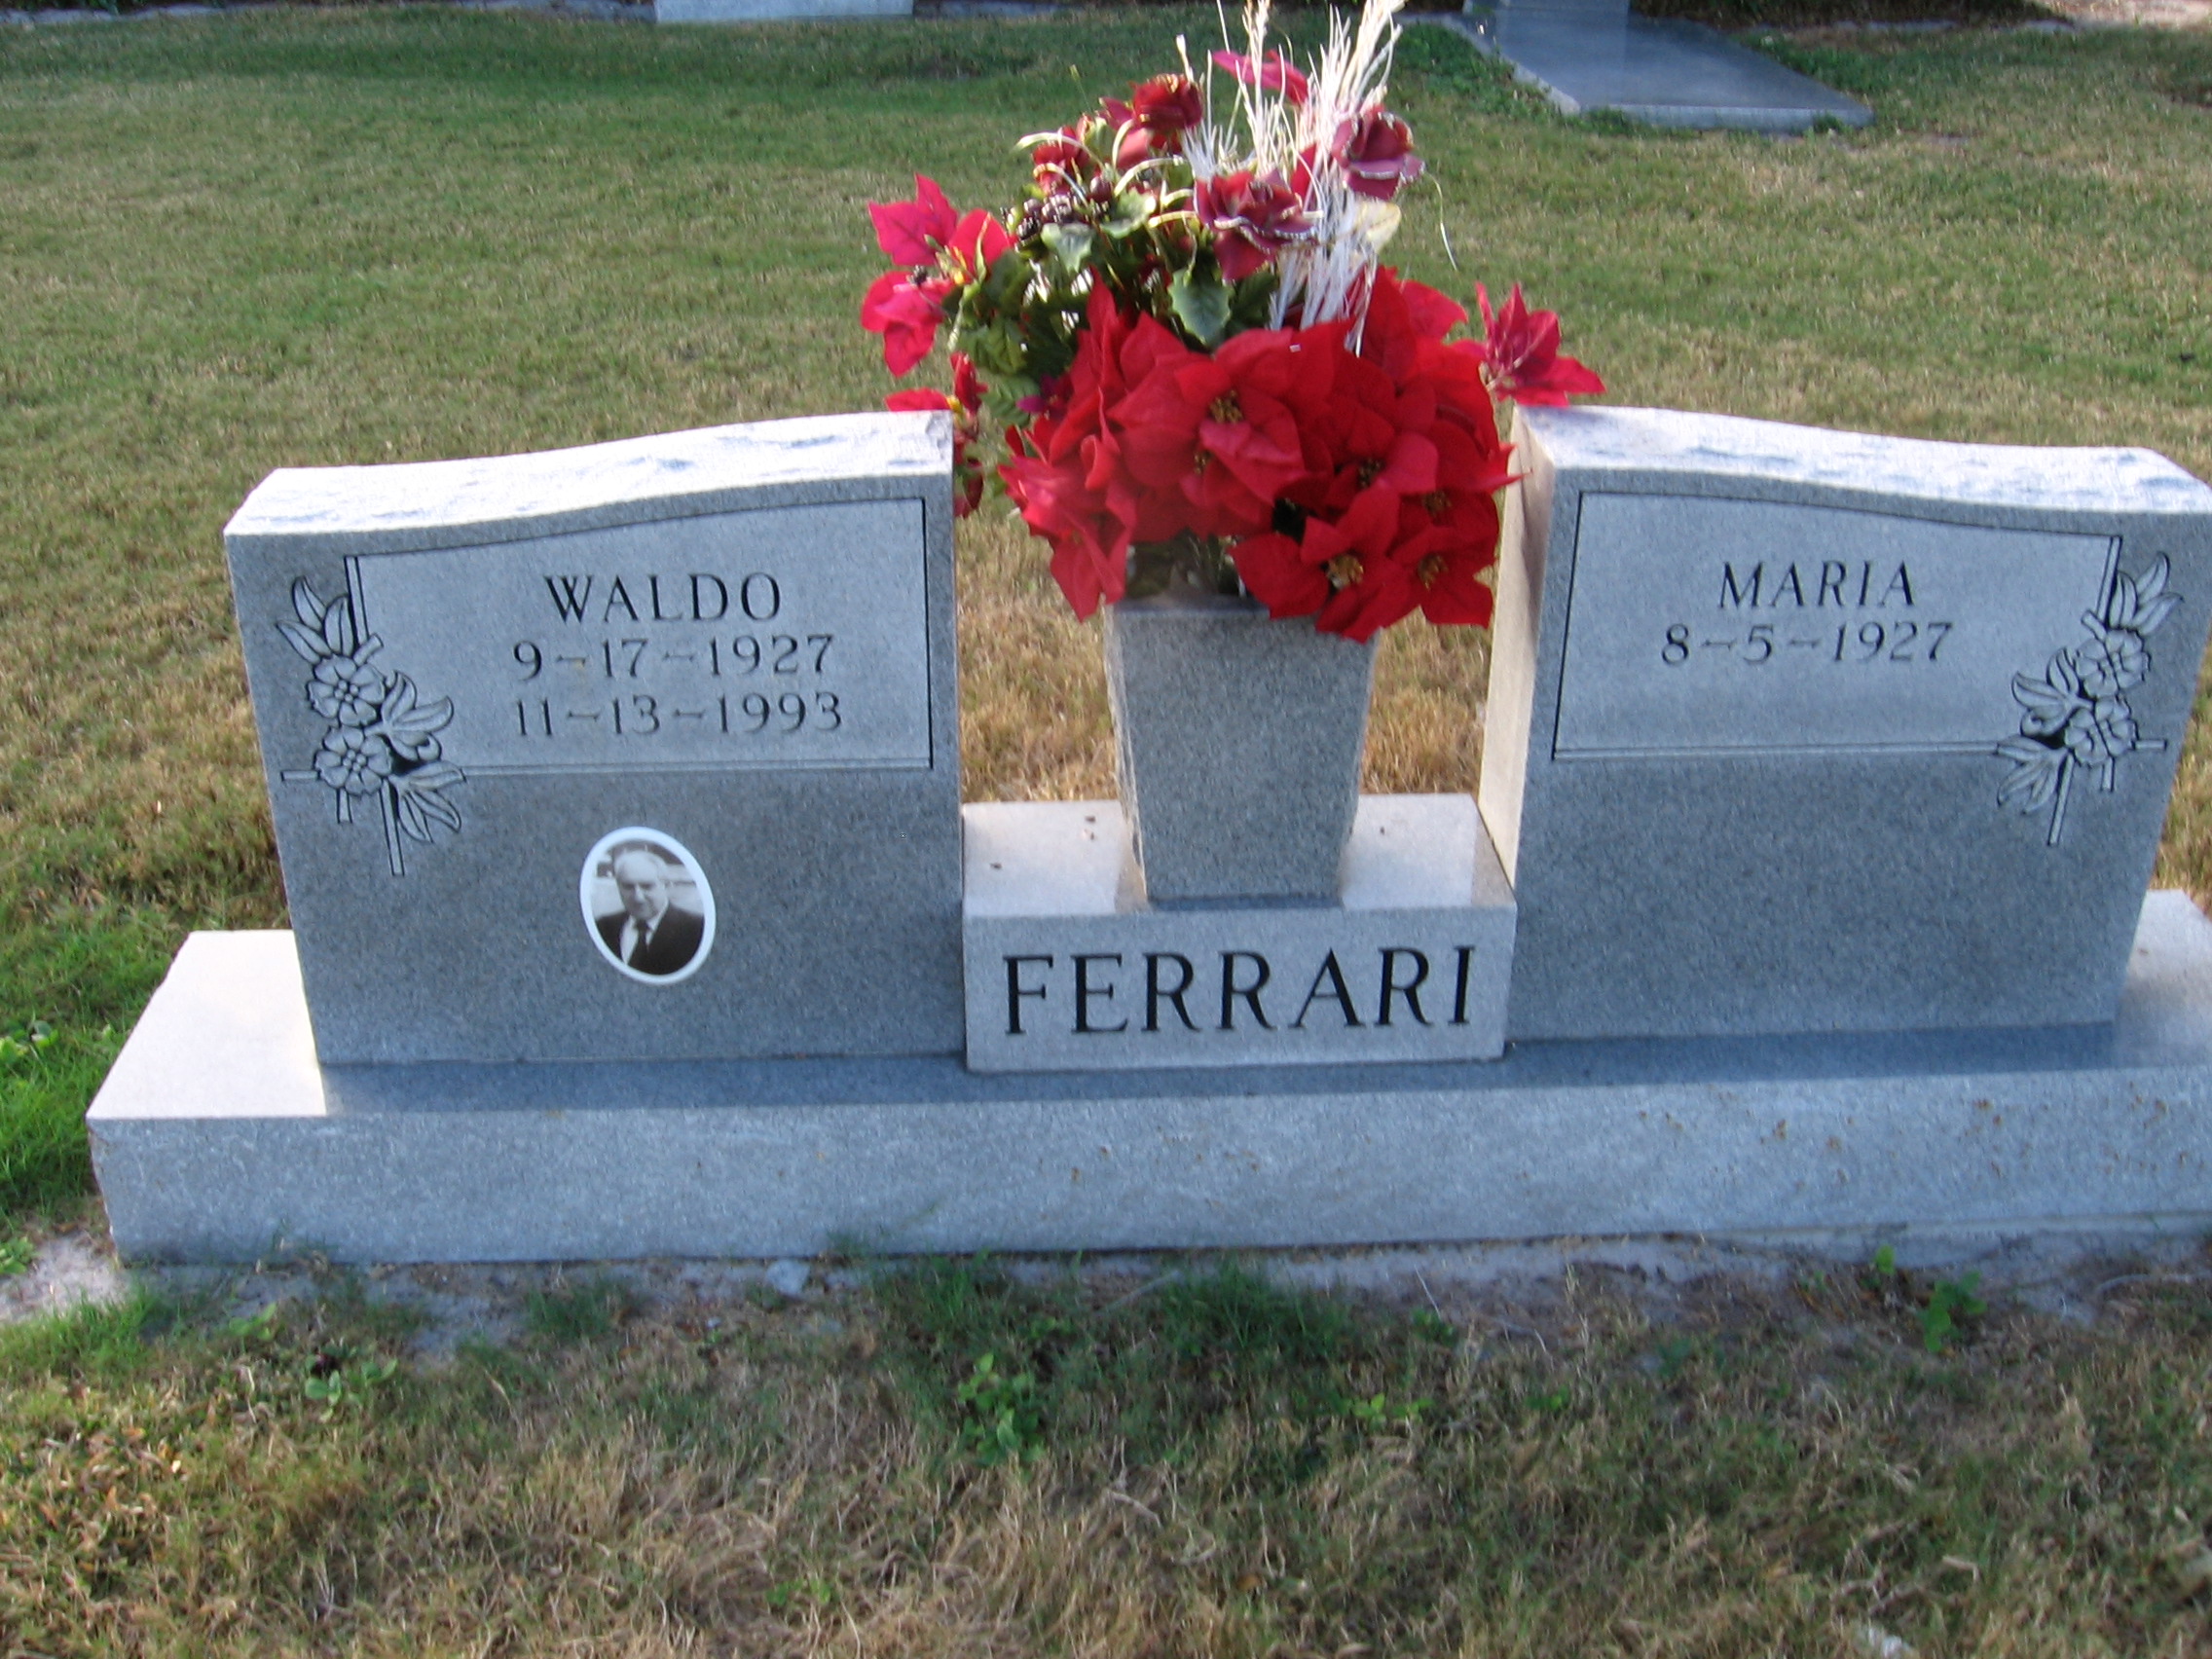 Waldo Ferrari